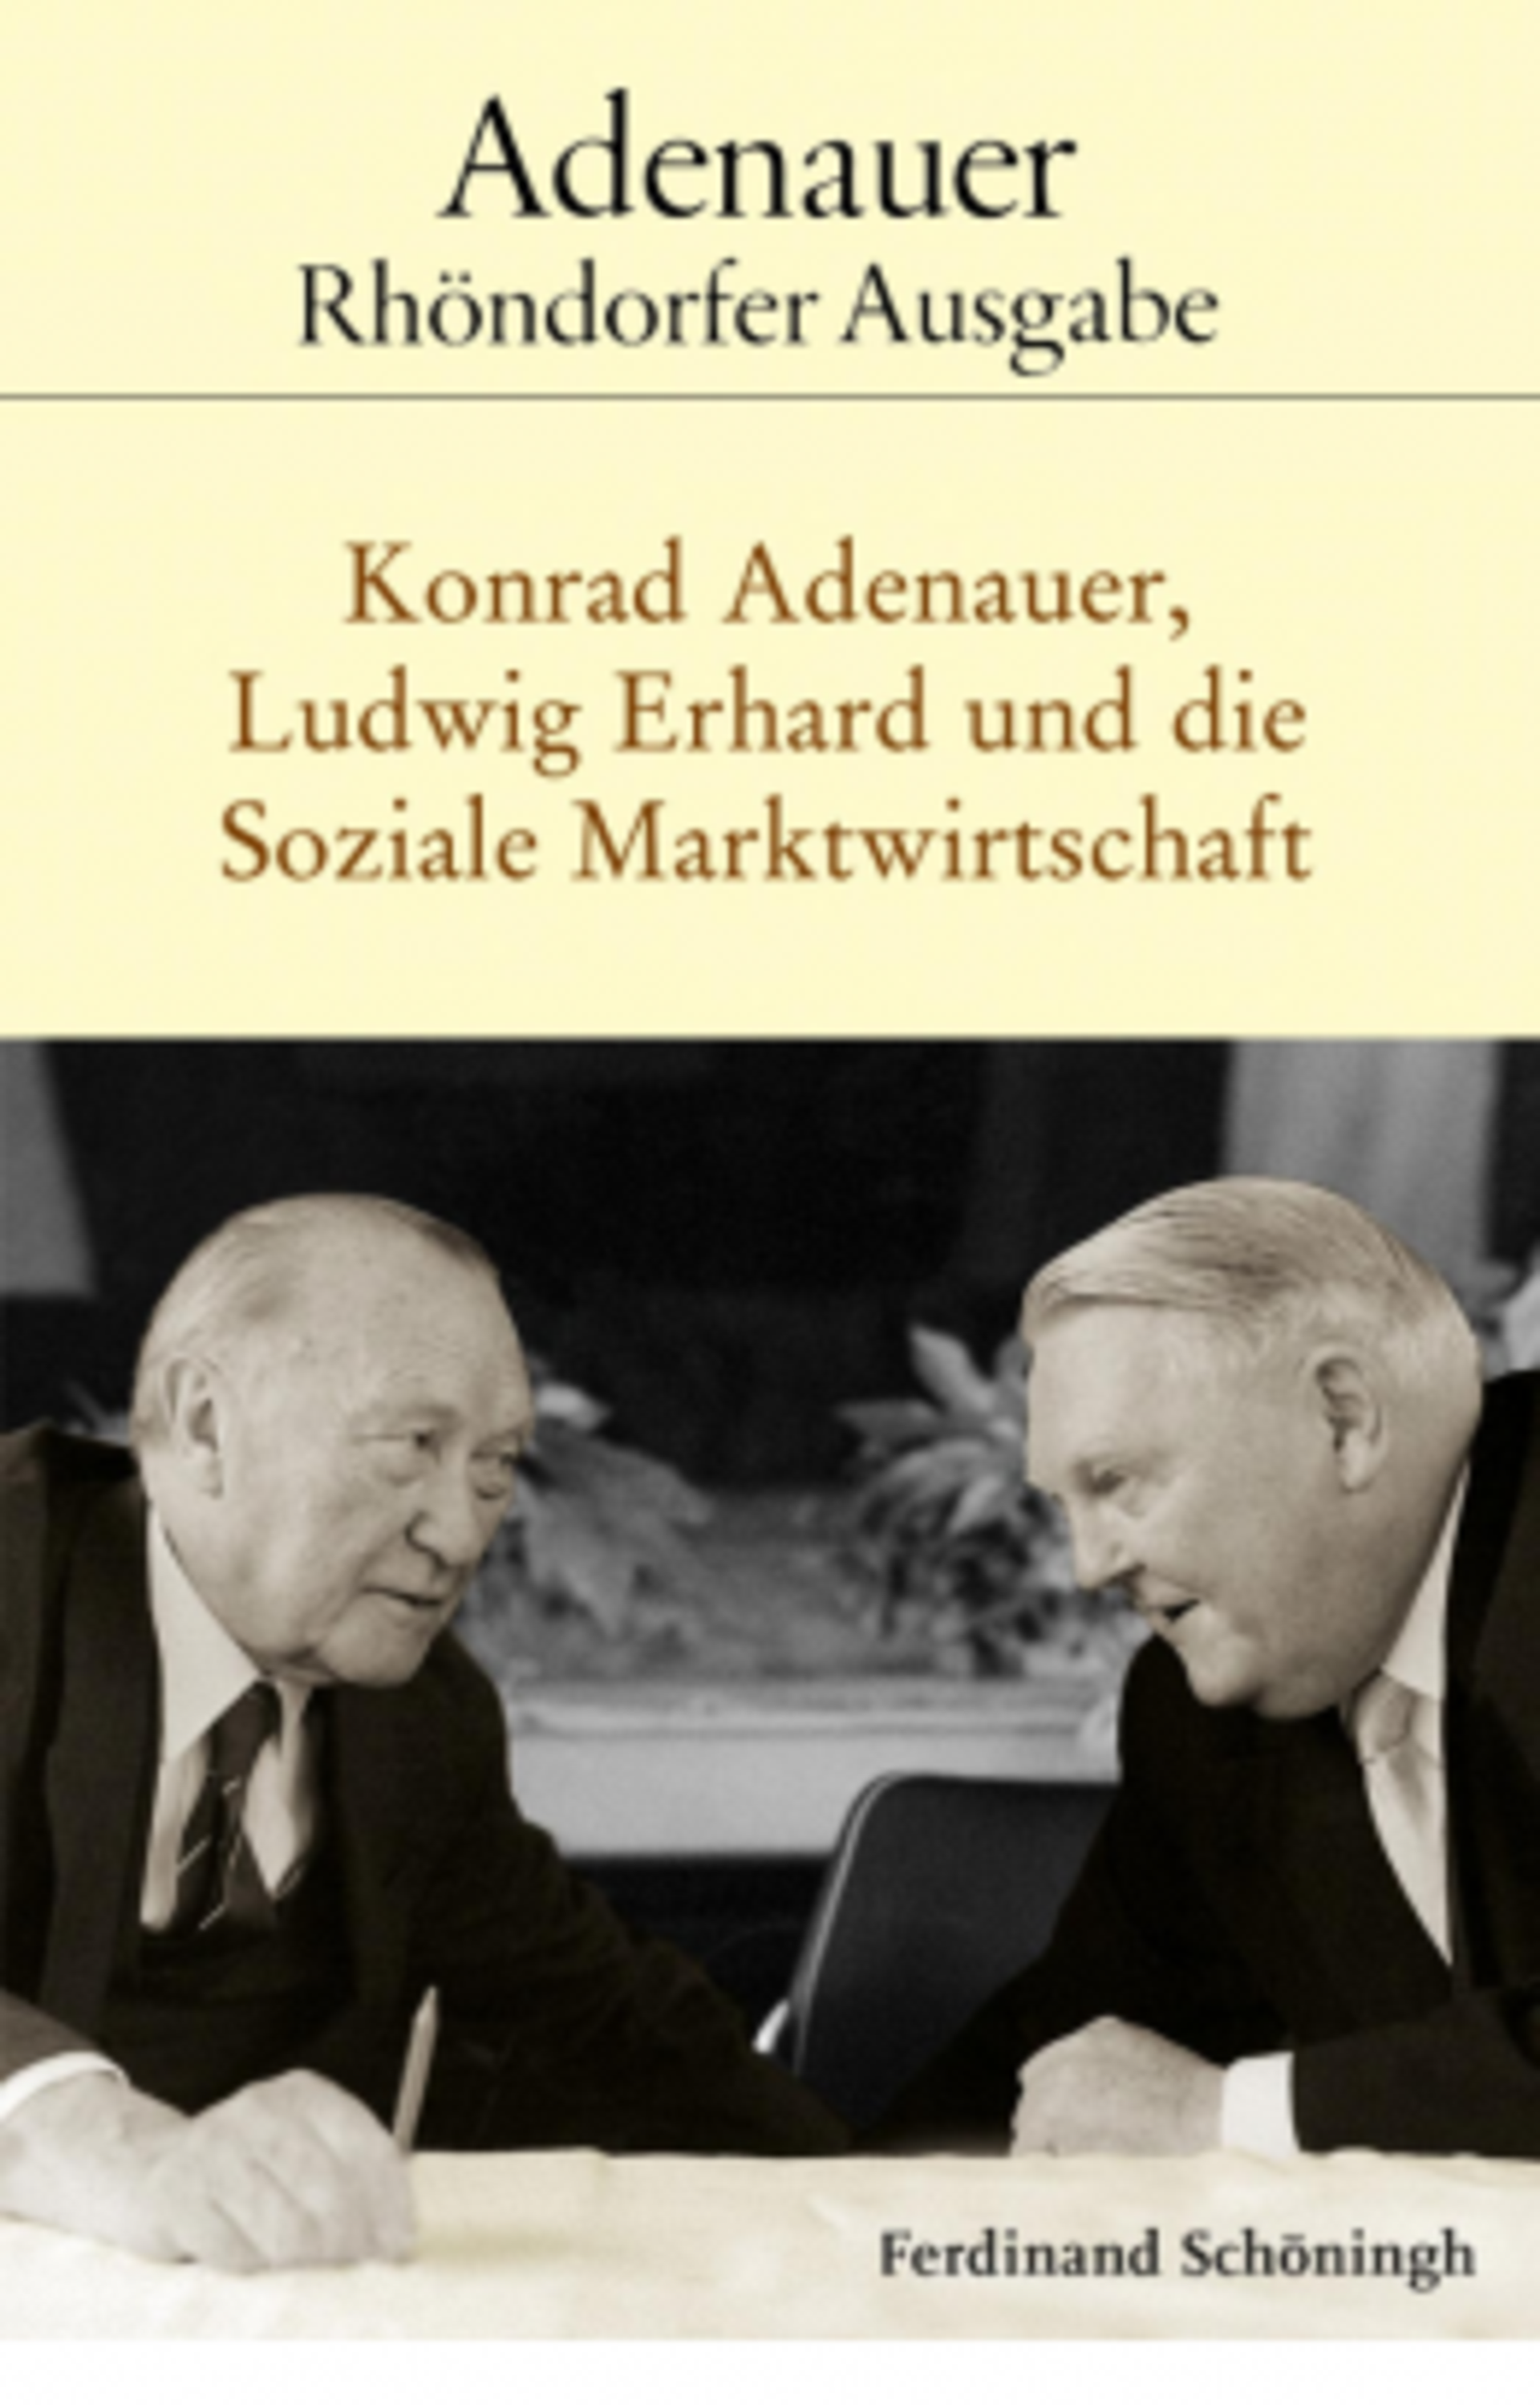 Buchcover: Adenauer redet mit zusammengesteckten Köpfen mit Erhard